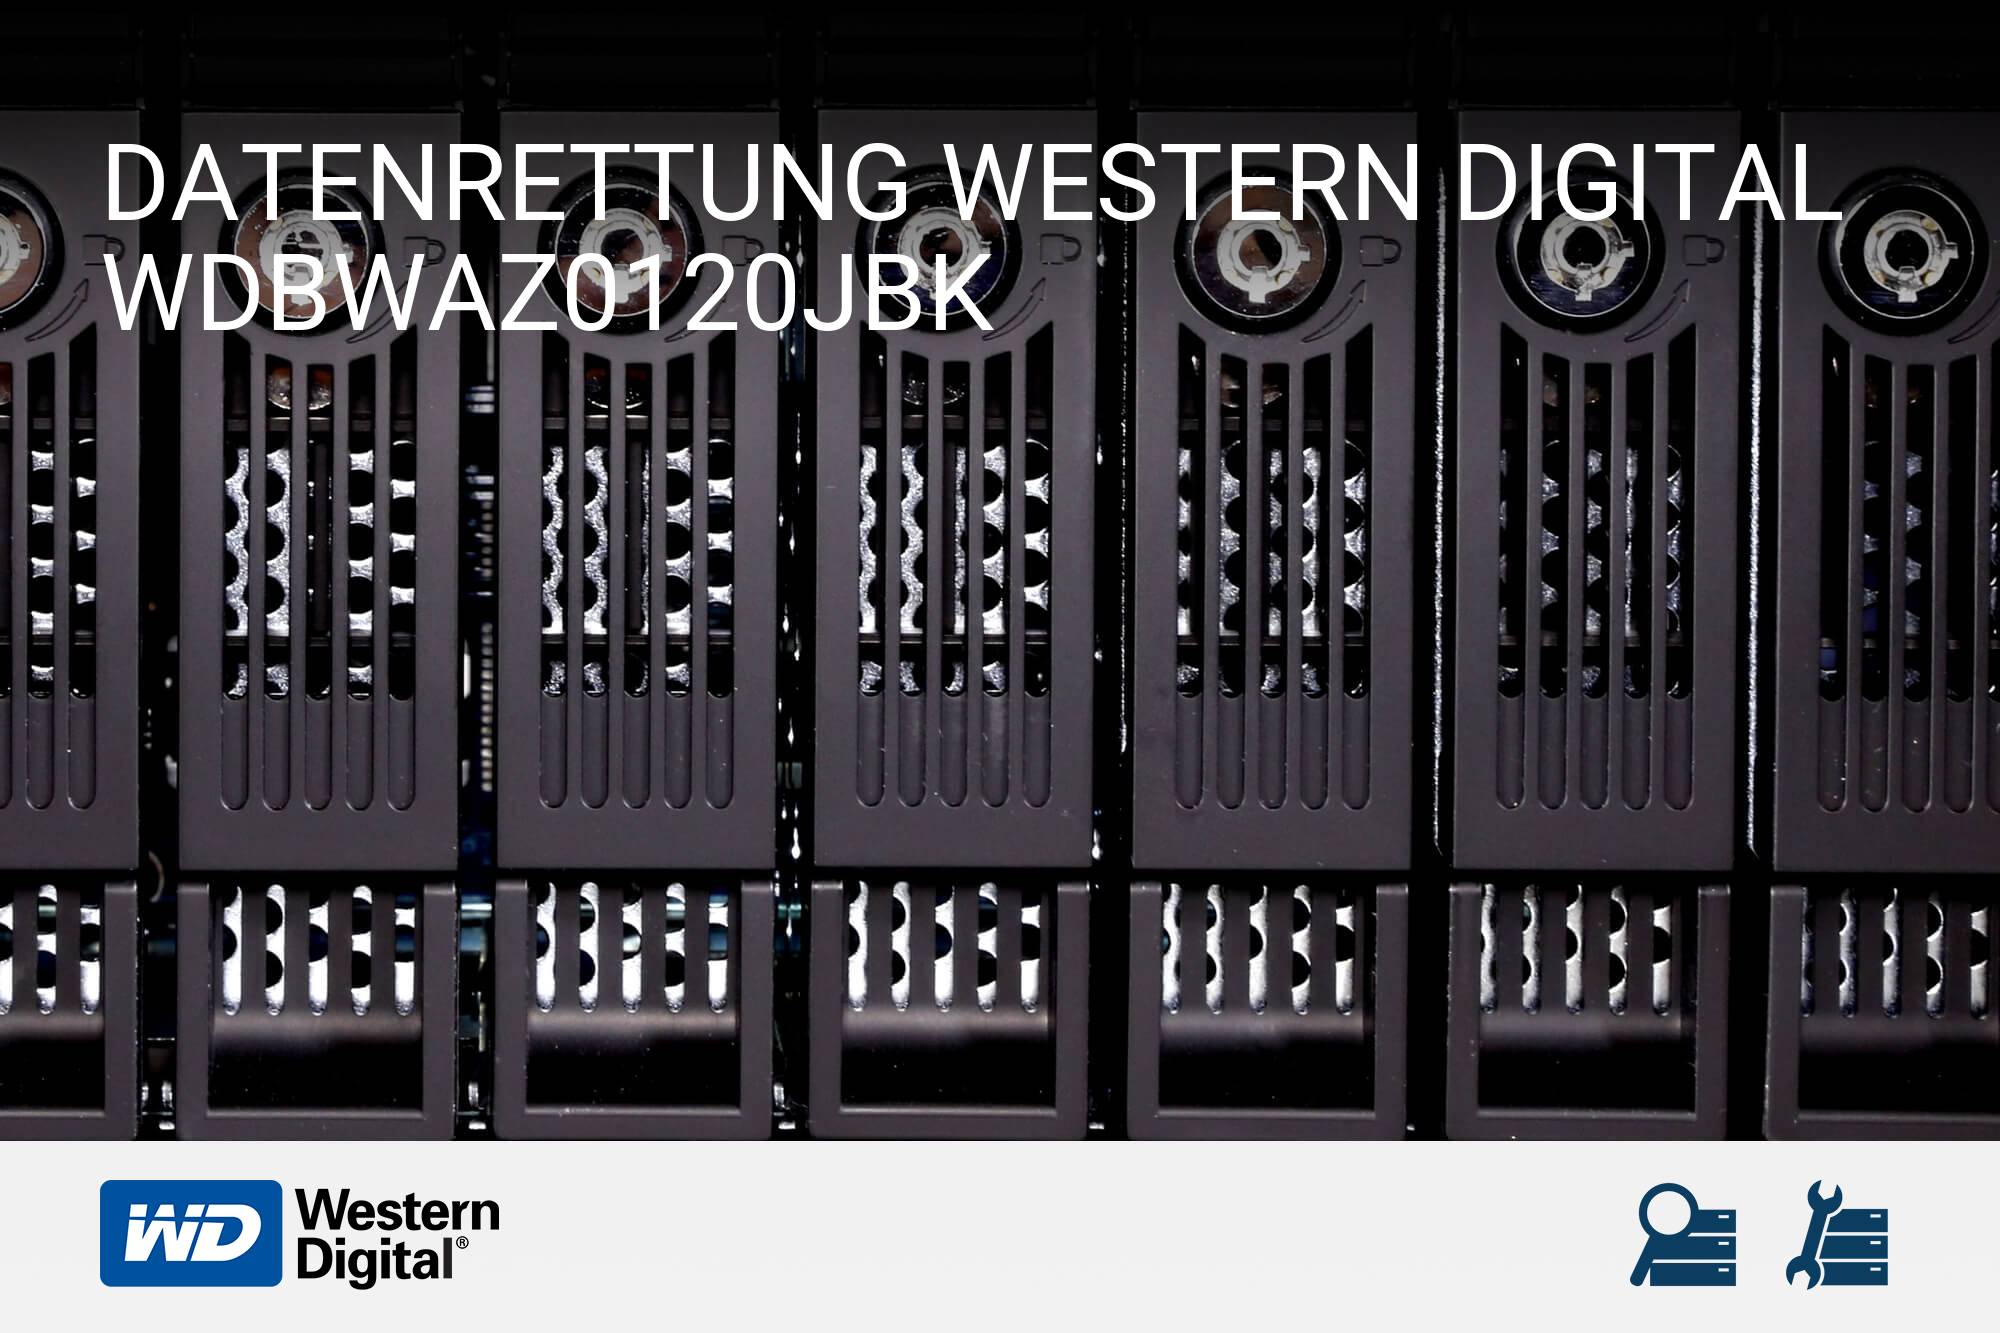 Western Digital WDBWAZ0120JBK